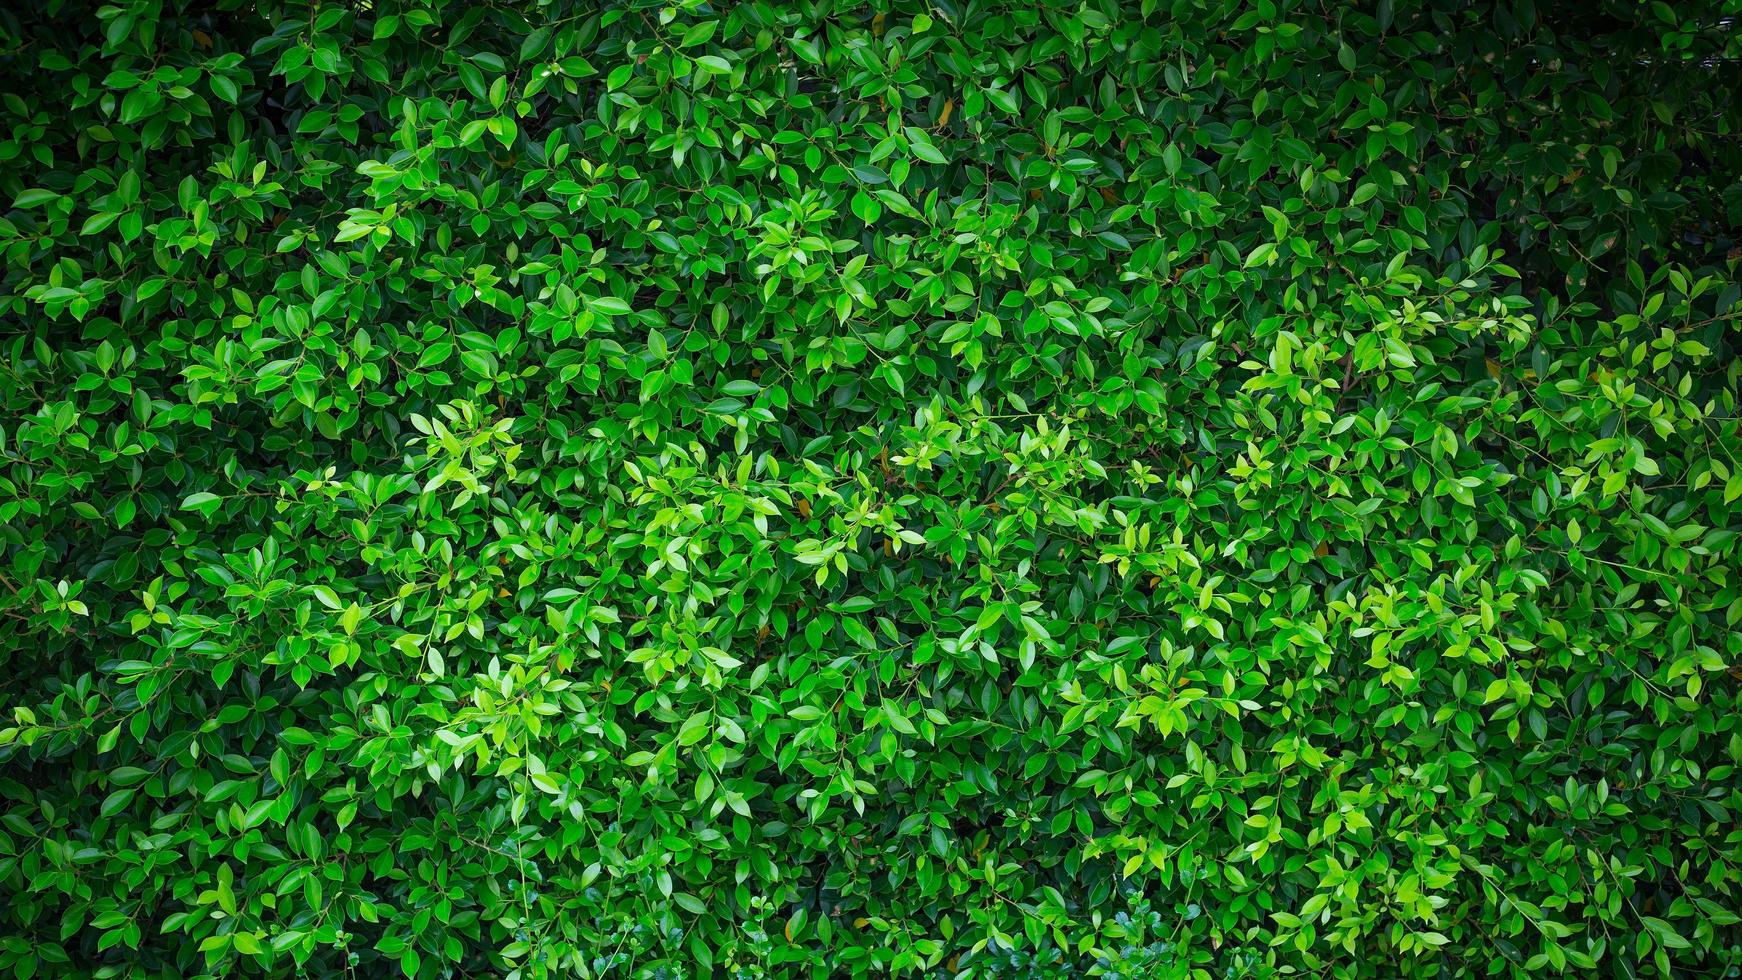 grön natur vägg texturerad bakgrund foto